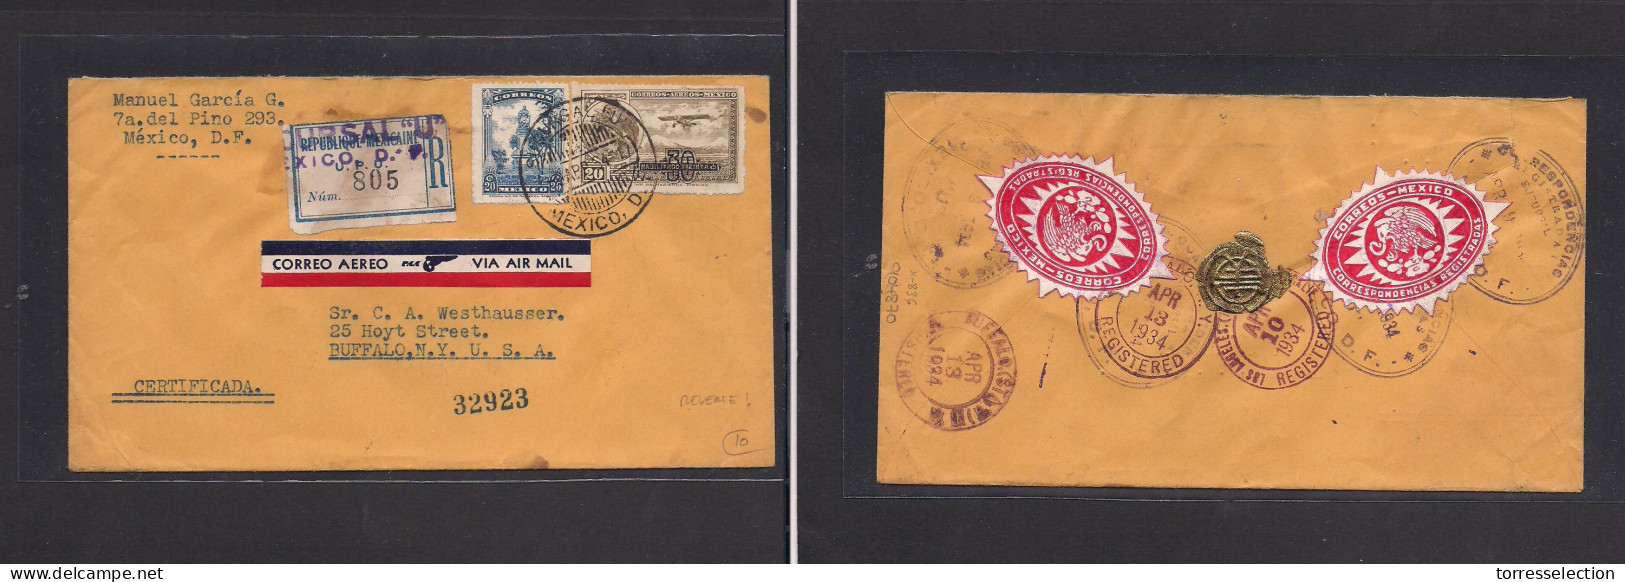 MEXICO. Mexico - Cover - 1964 DF To USA Buffalo NY Air Mult Fkd Env, Reverse Seals. Easy Deal. XSALE. - Mexico